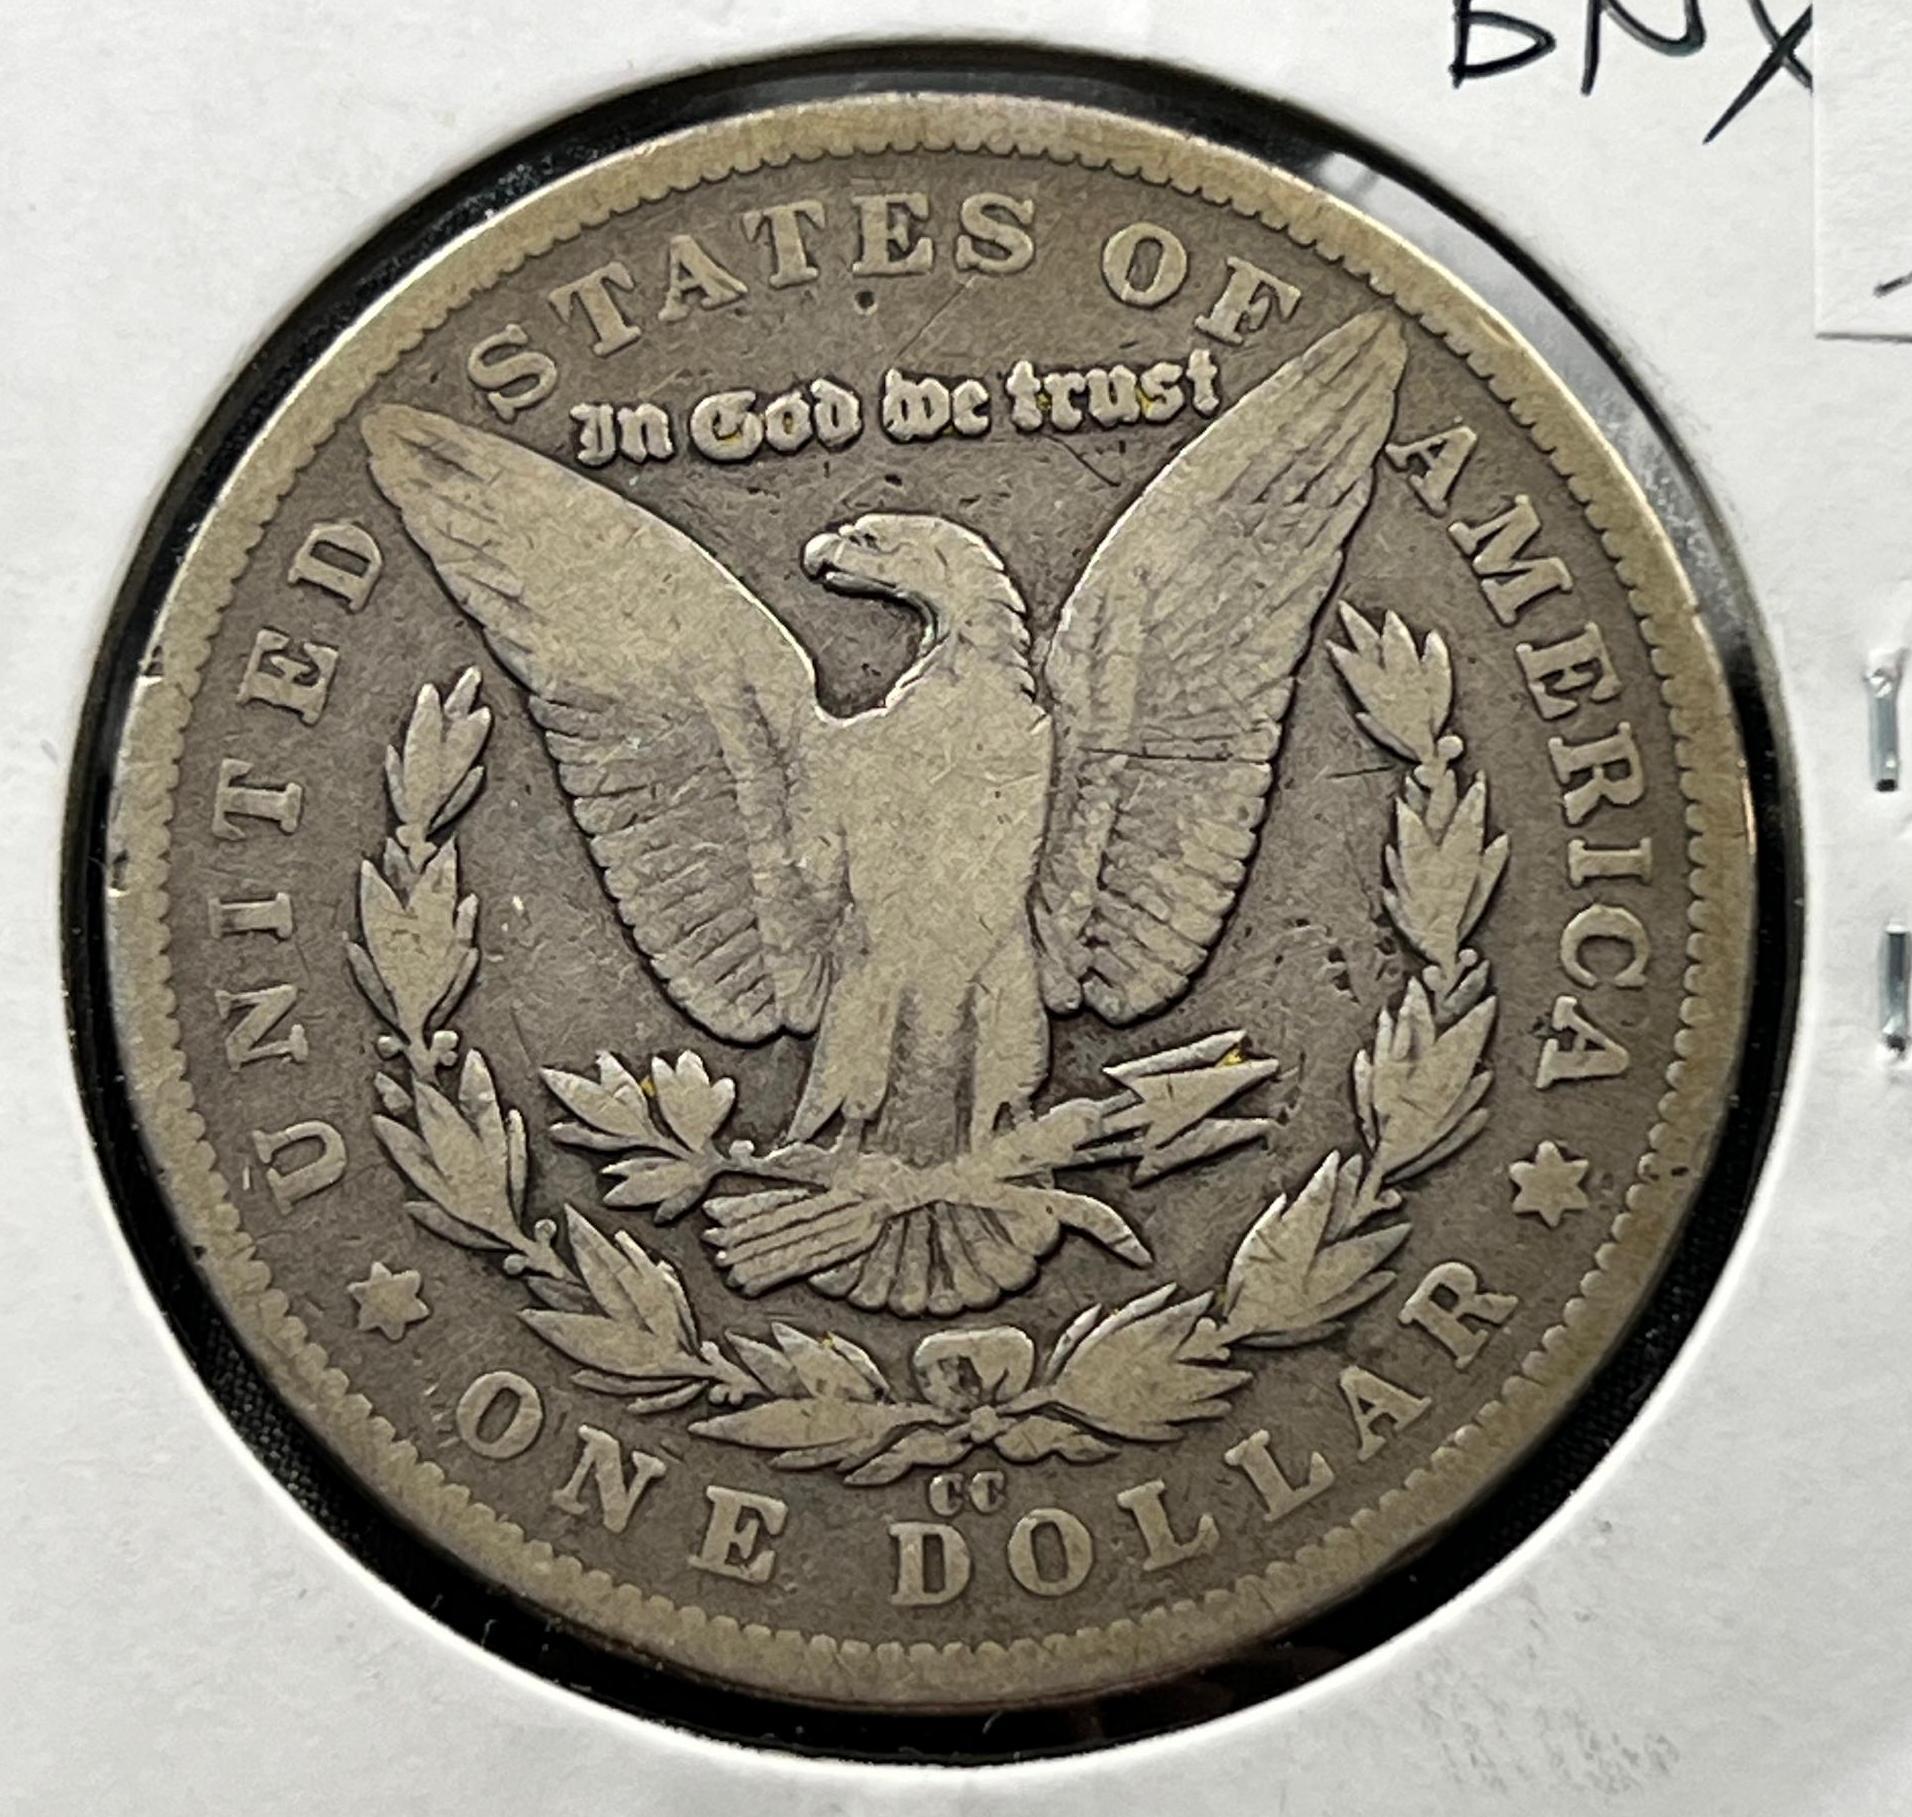 KEY DATE 1879-CC Morgan Silver Dollar